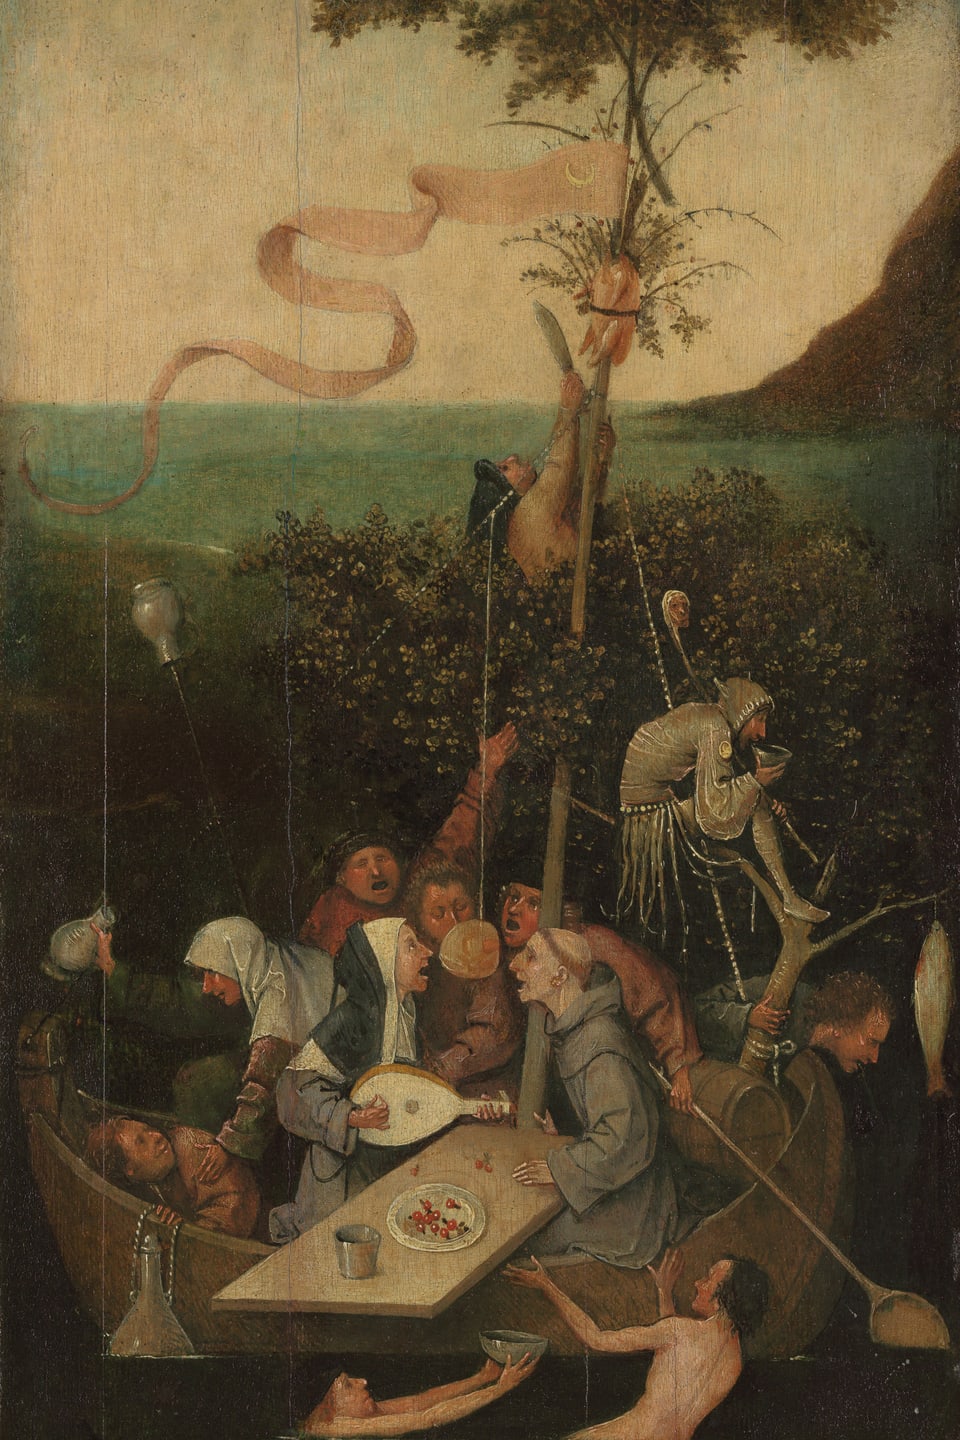 Gemälde, das ein Schiff zeigt, auf dessen Deck Menschen feiern.